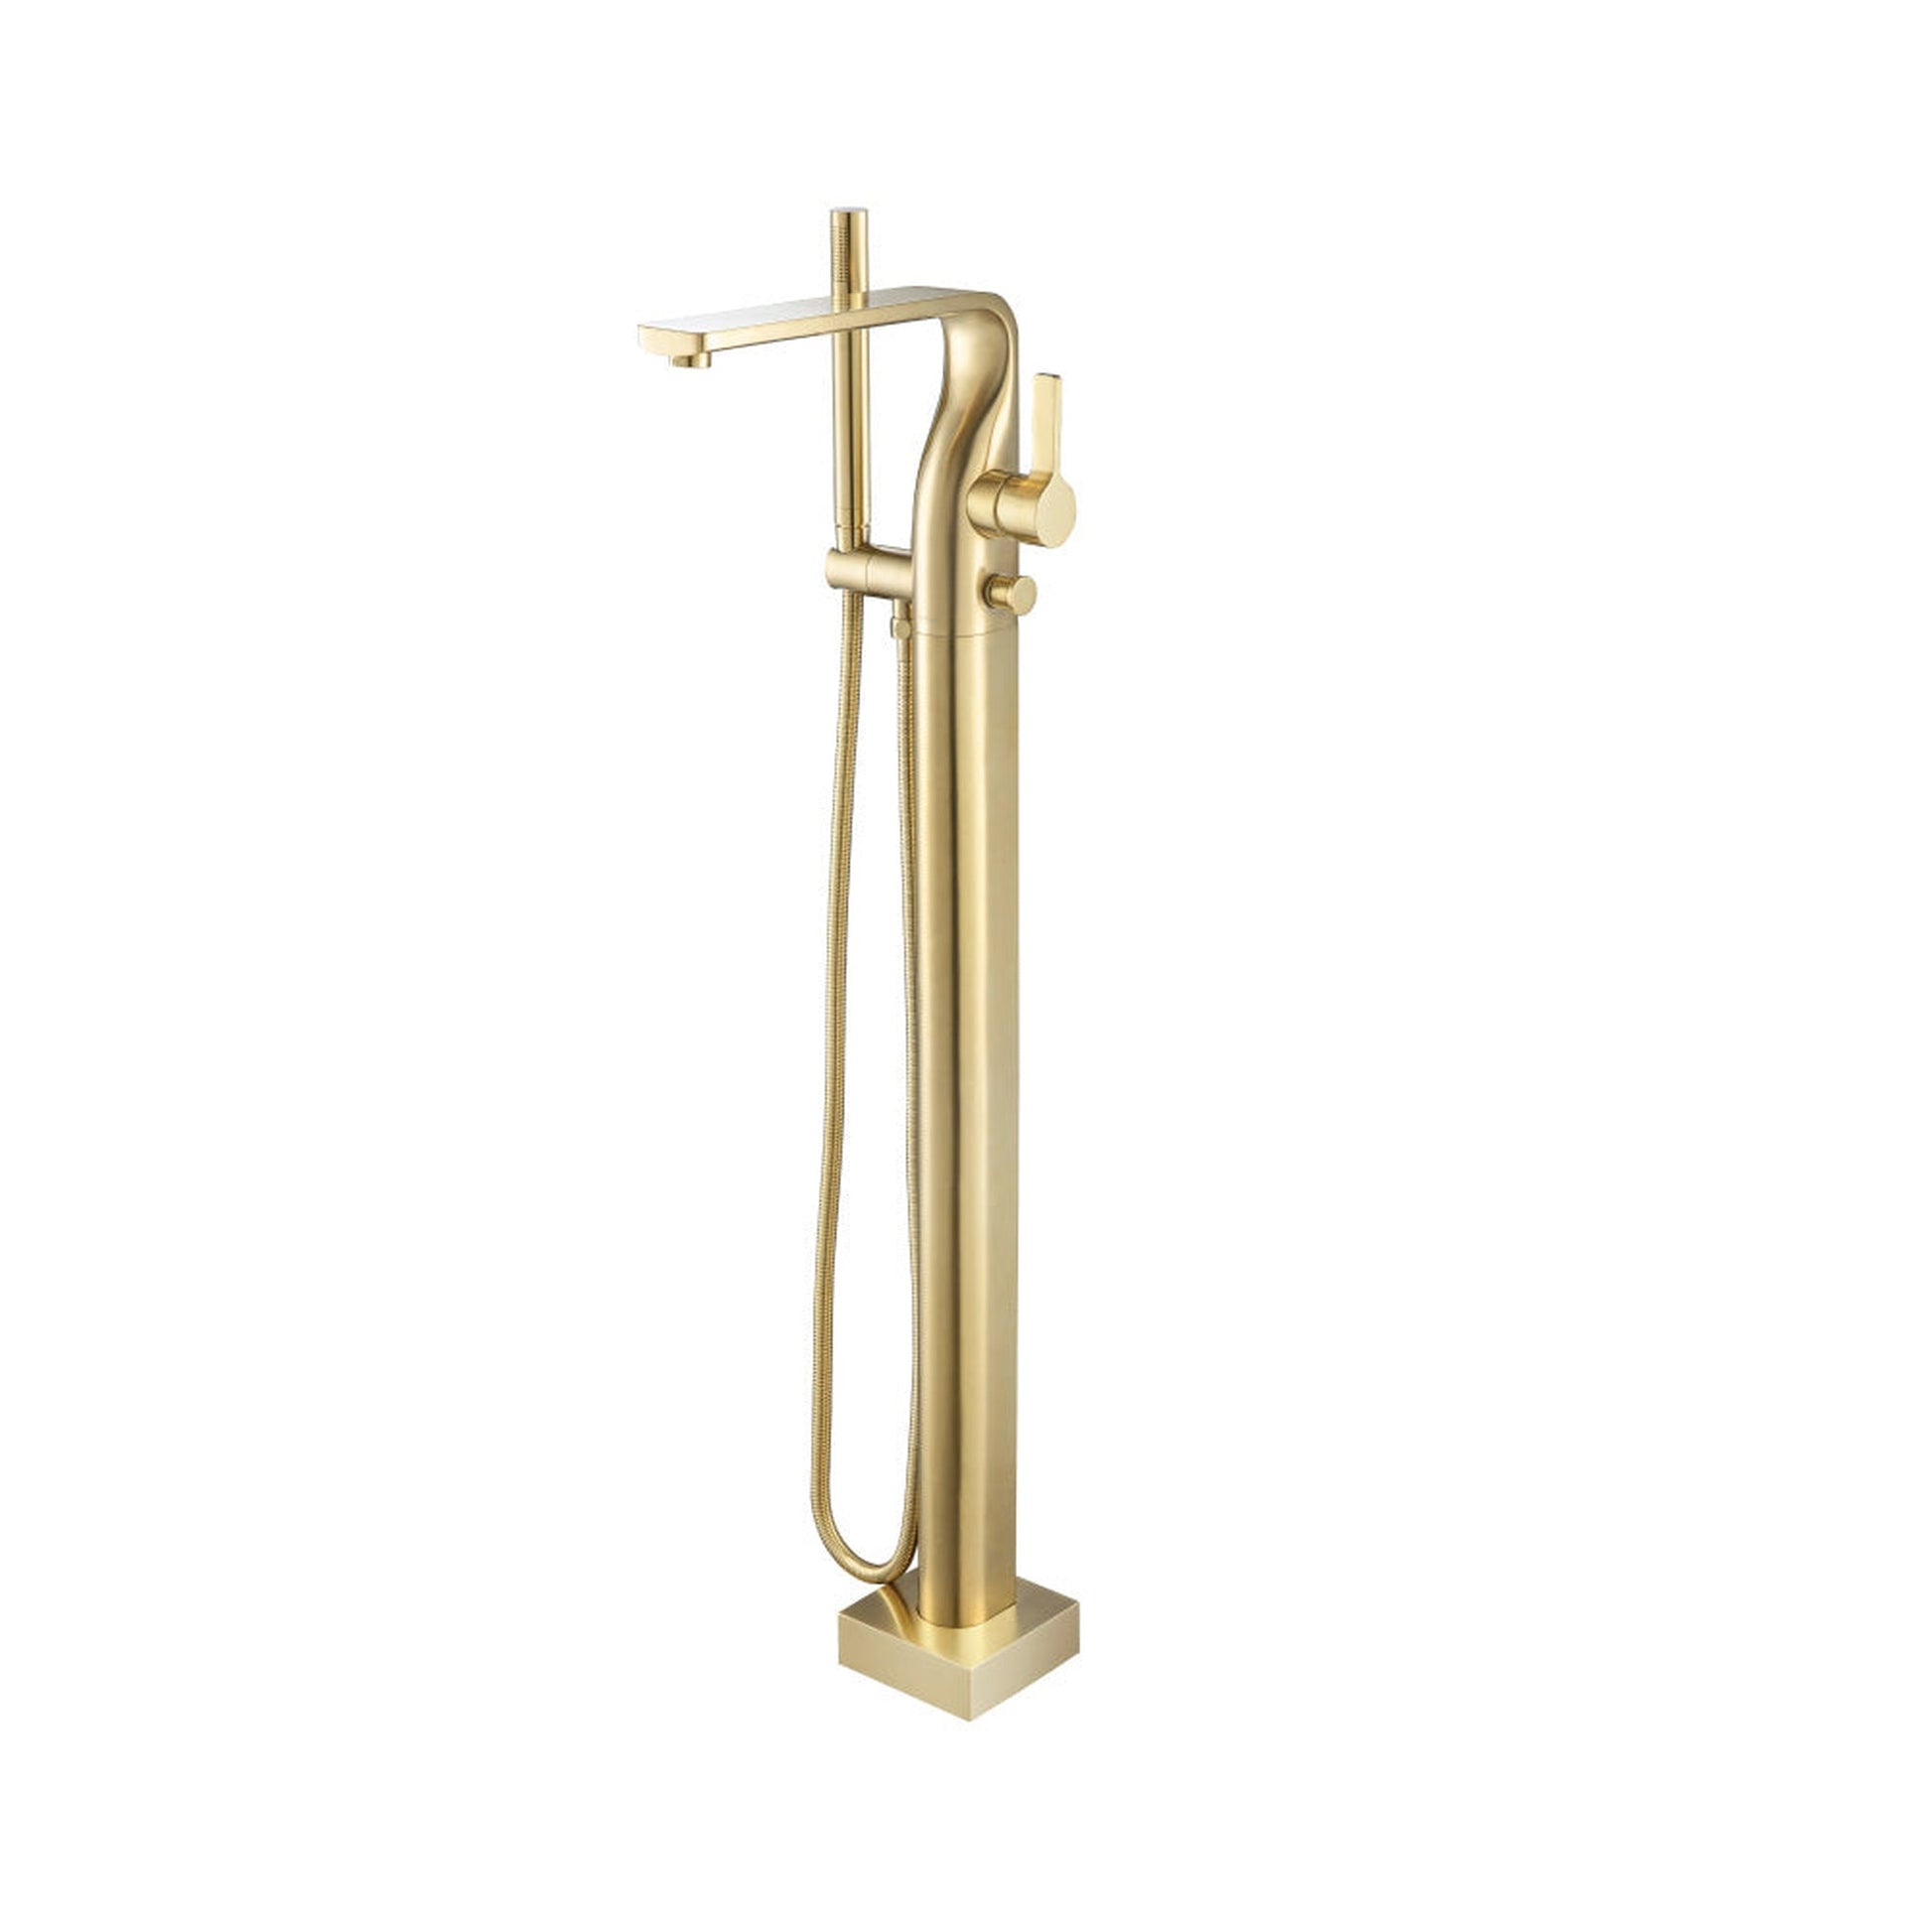 Isenberg Serie 260 Freestanding Floor Mount Bathtub / Tub Filler With Hand Shower in Satin Brass